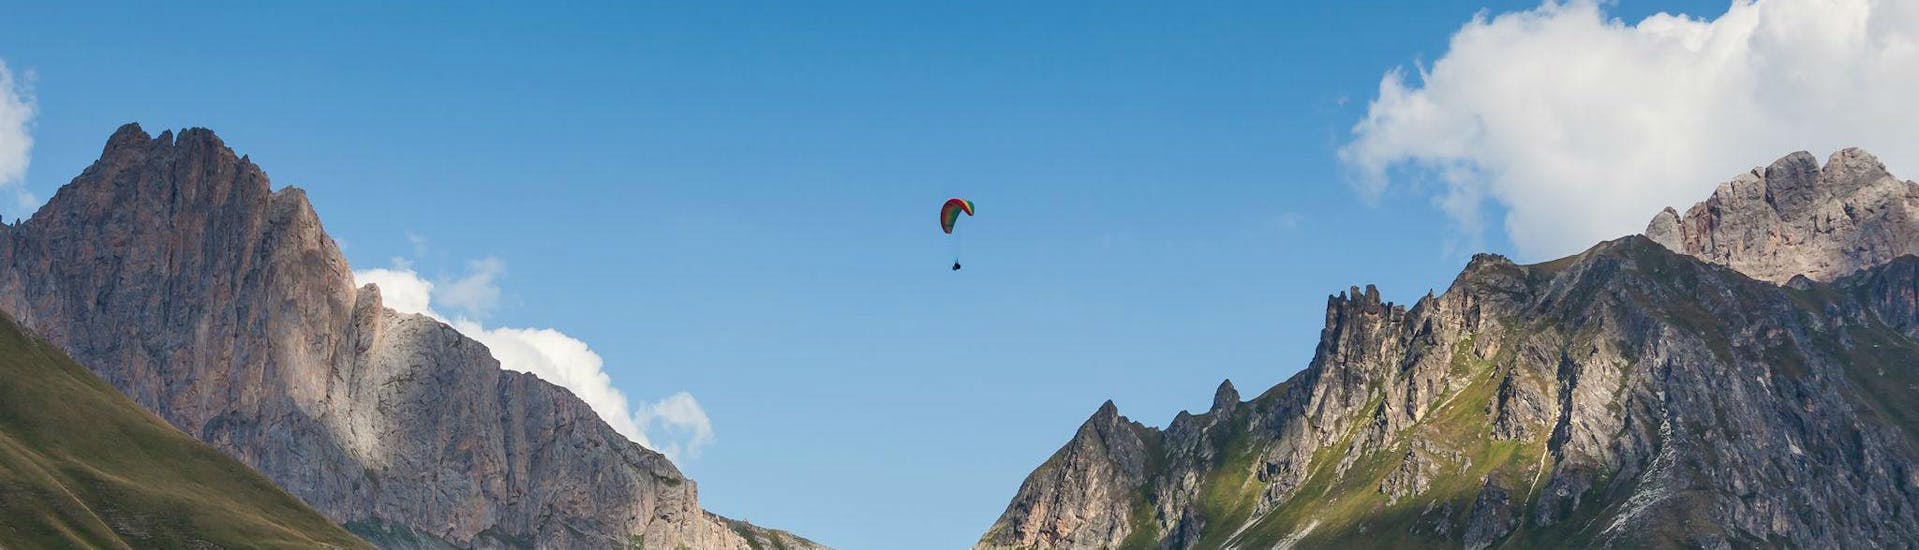 Un pilote de parapente d'Emotion'Air vole haut au-dessus de Serre Chevalier lors d'un vol tandem parapente.